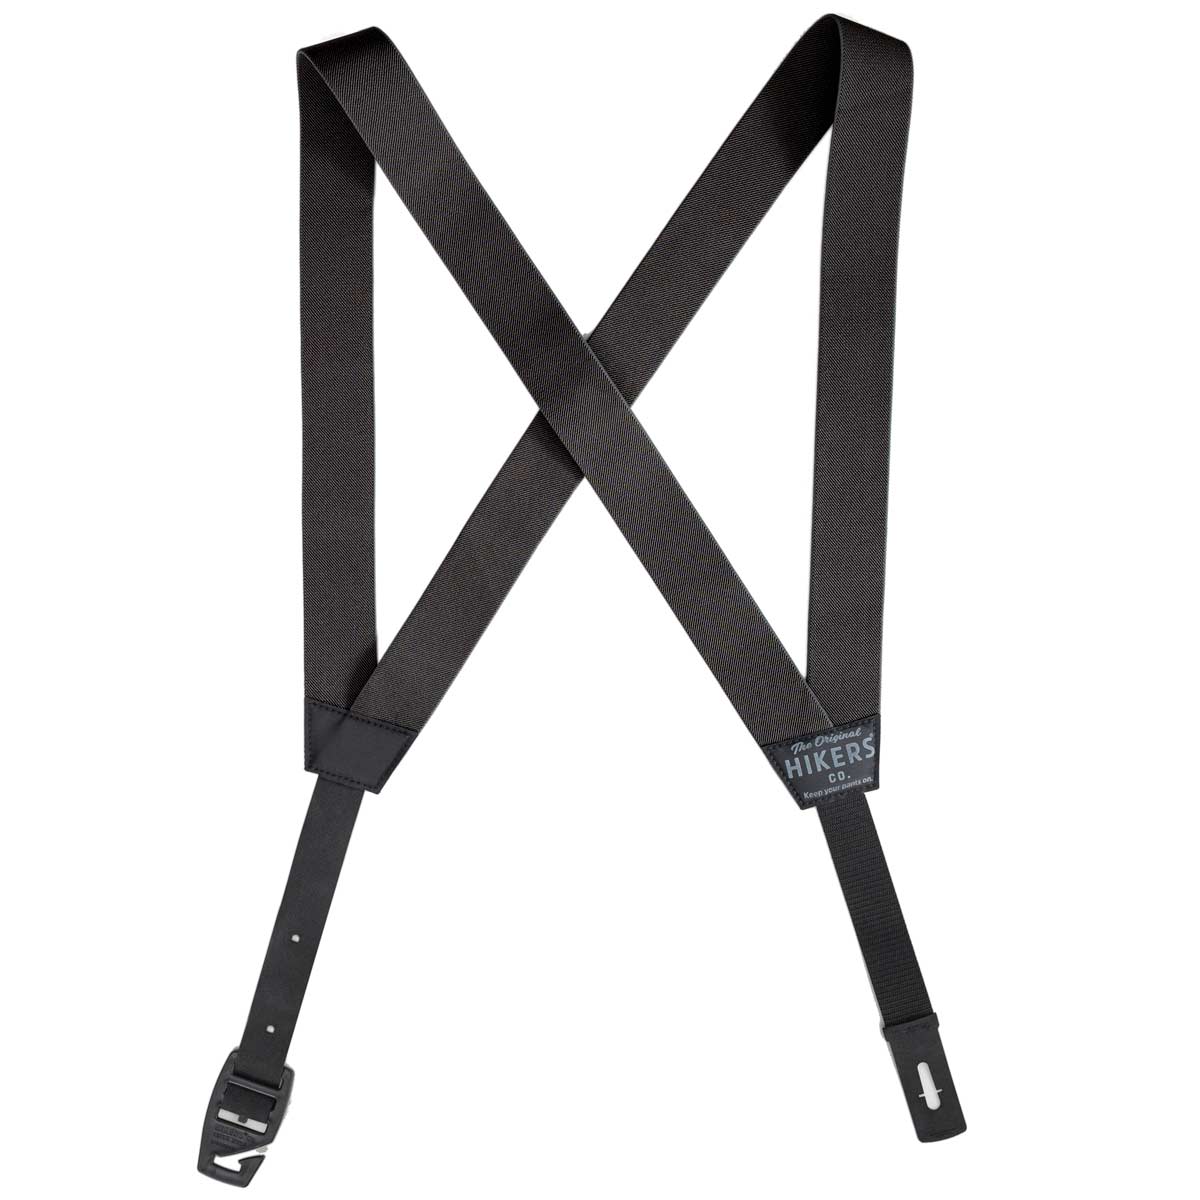 Upfitter® Belt Loop Suspenders in Army/Black – HIKERS® Co.